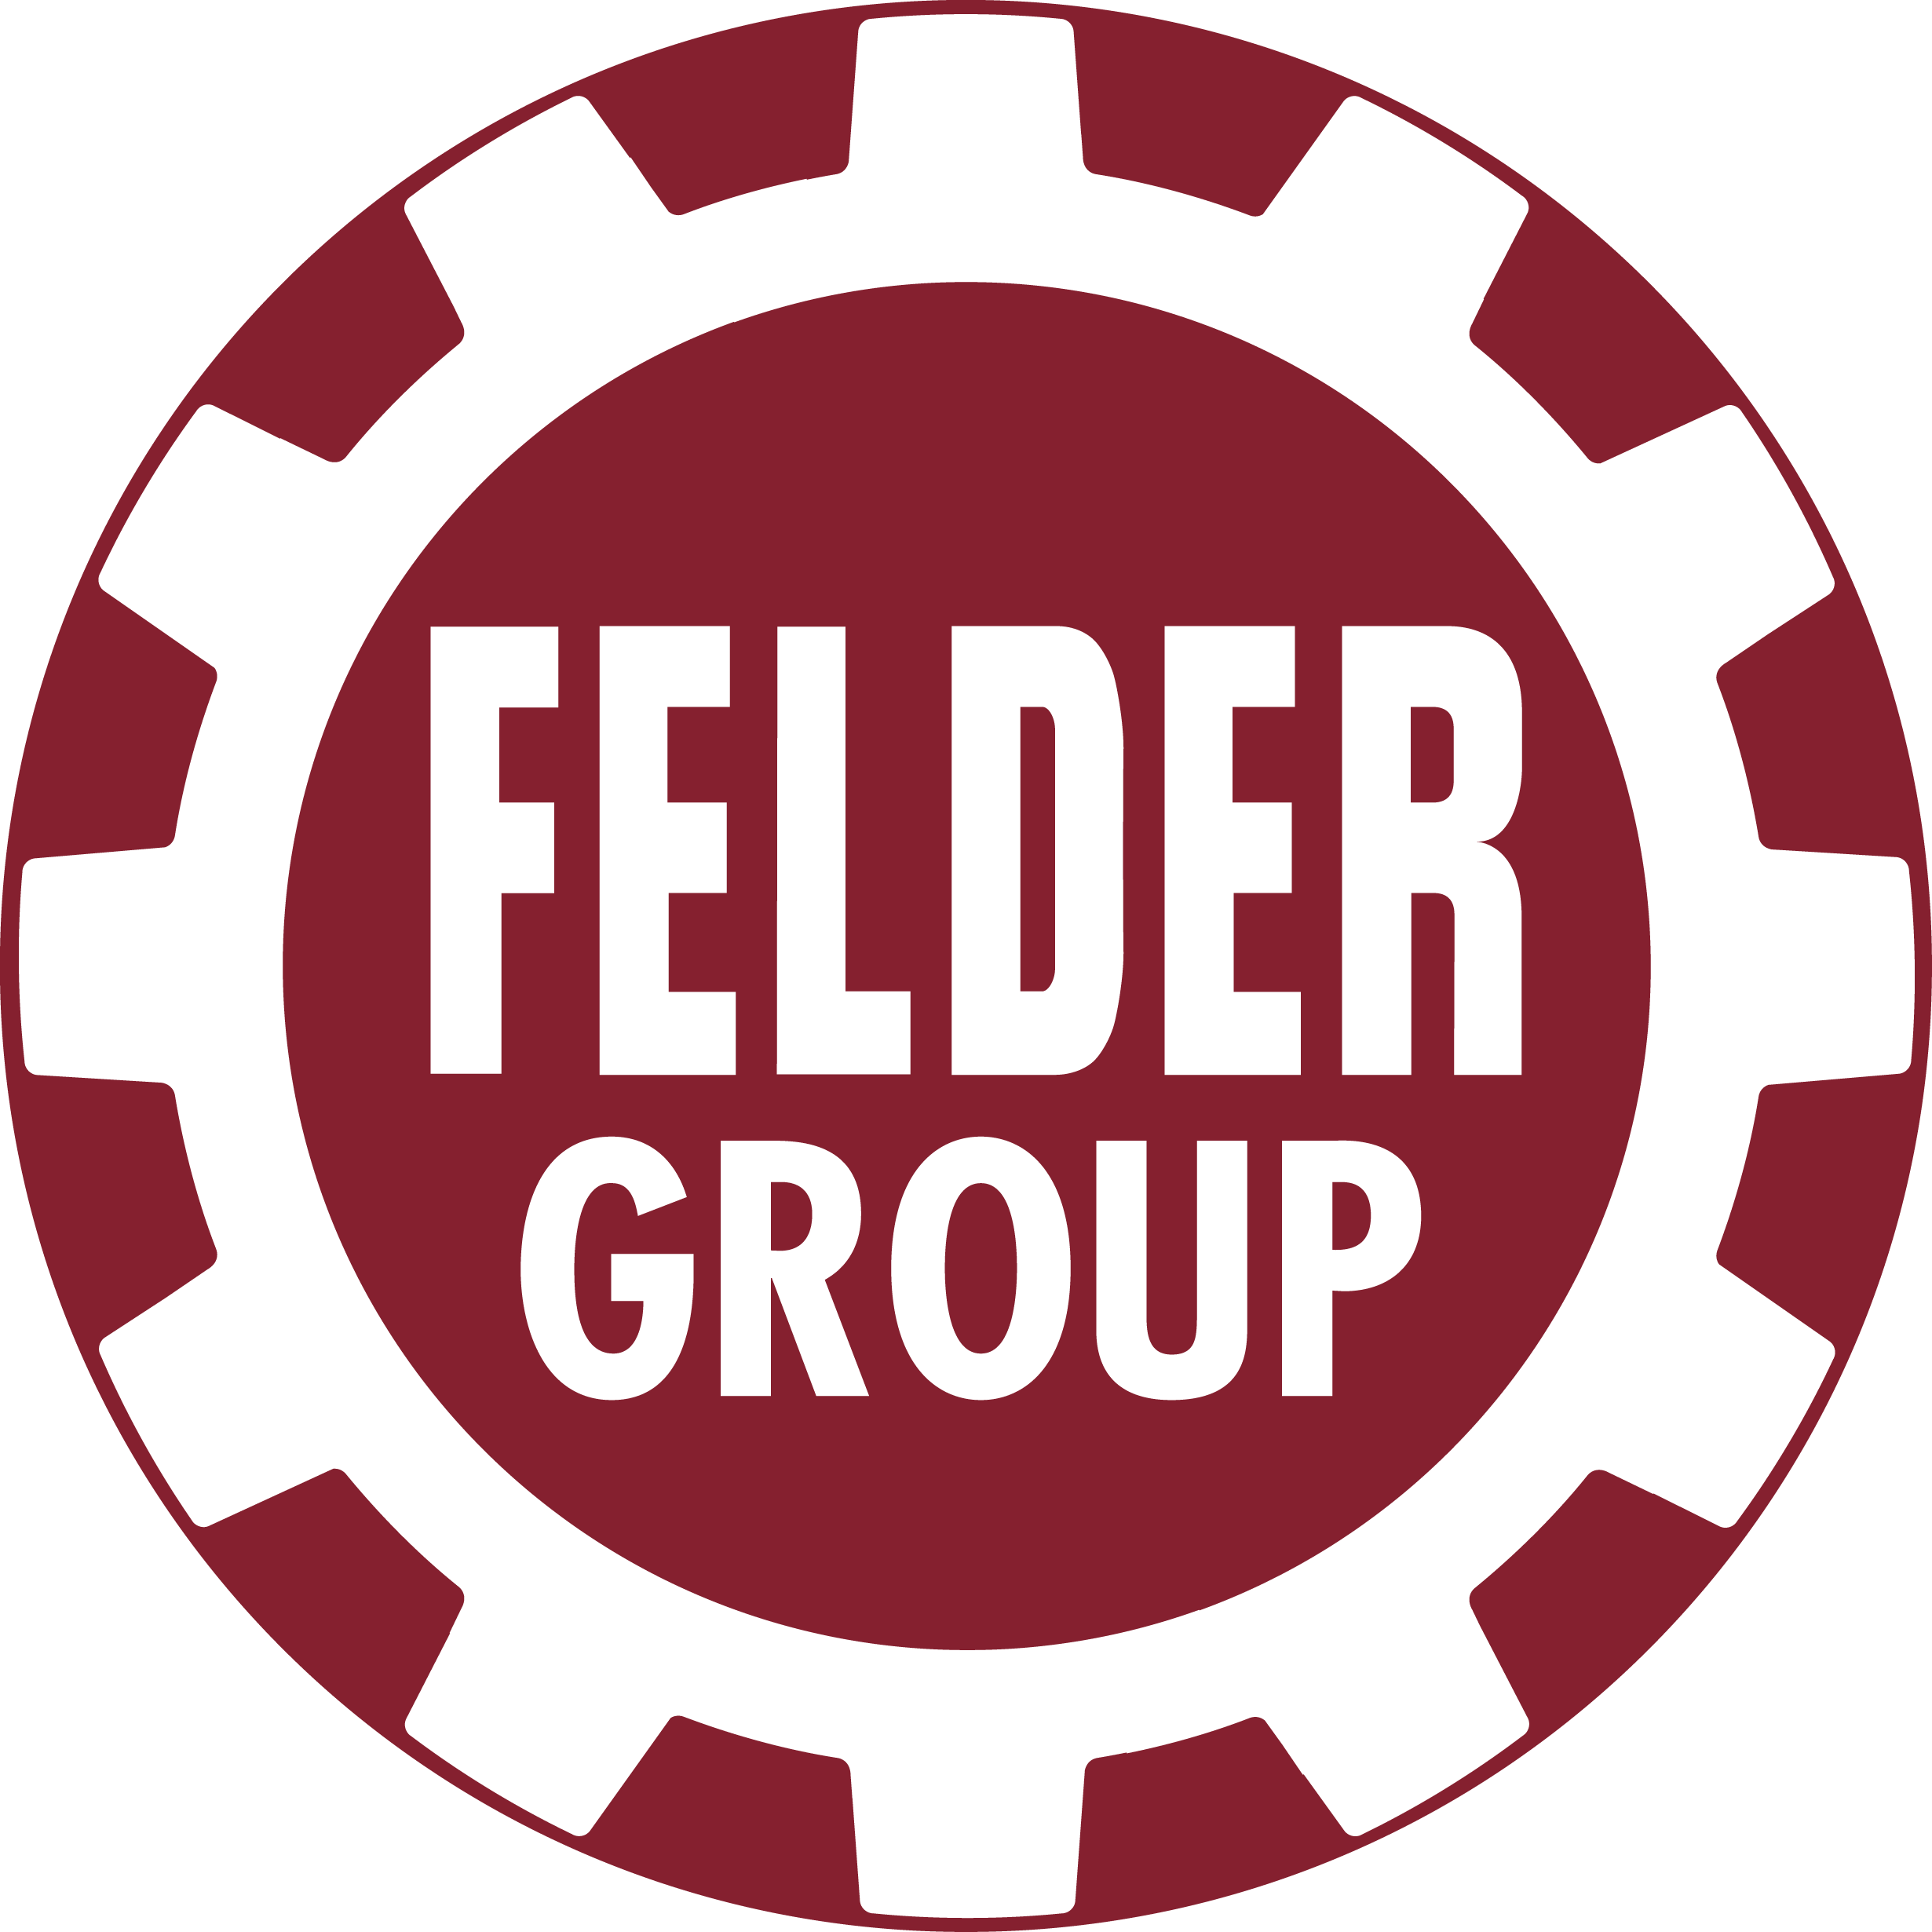 Felder-Group